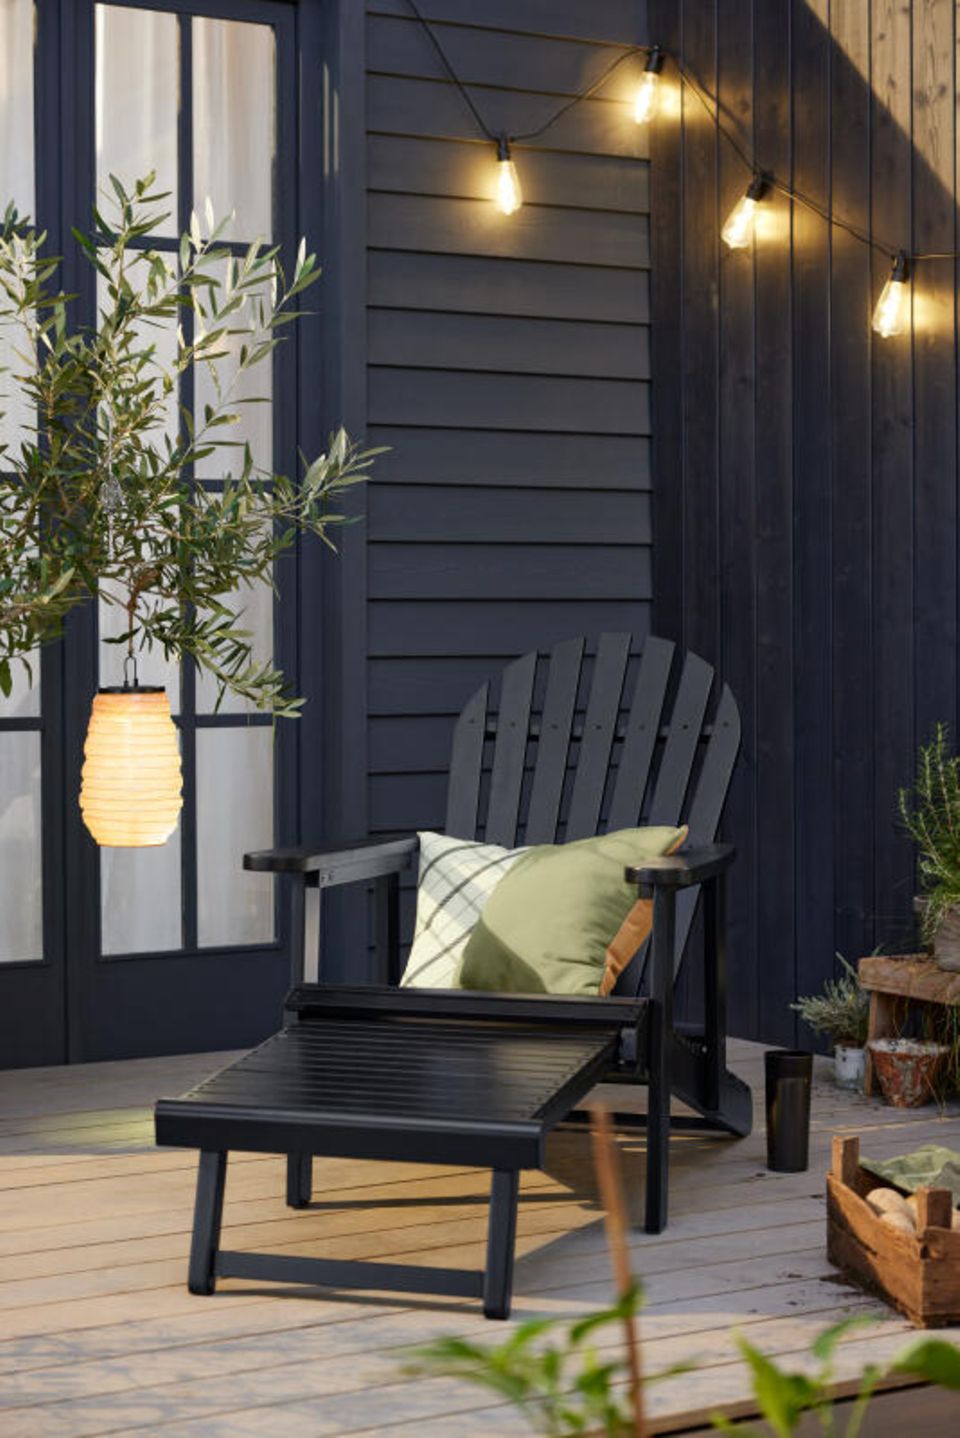 Liegestuhl auf einer Terrasse mit Lampion und Lichterkette